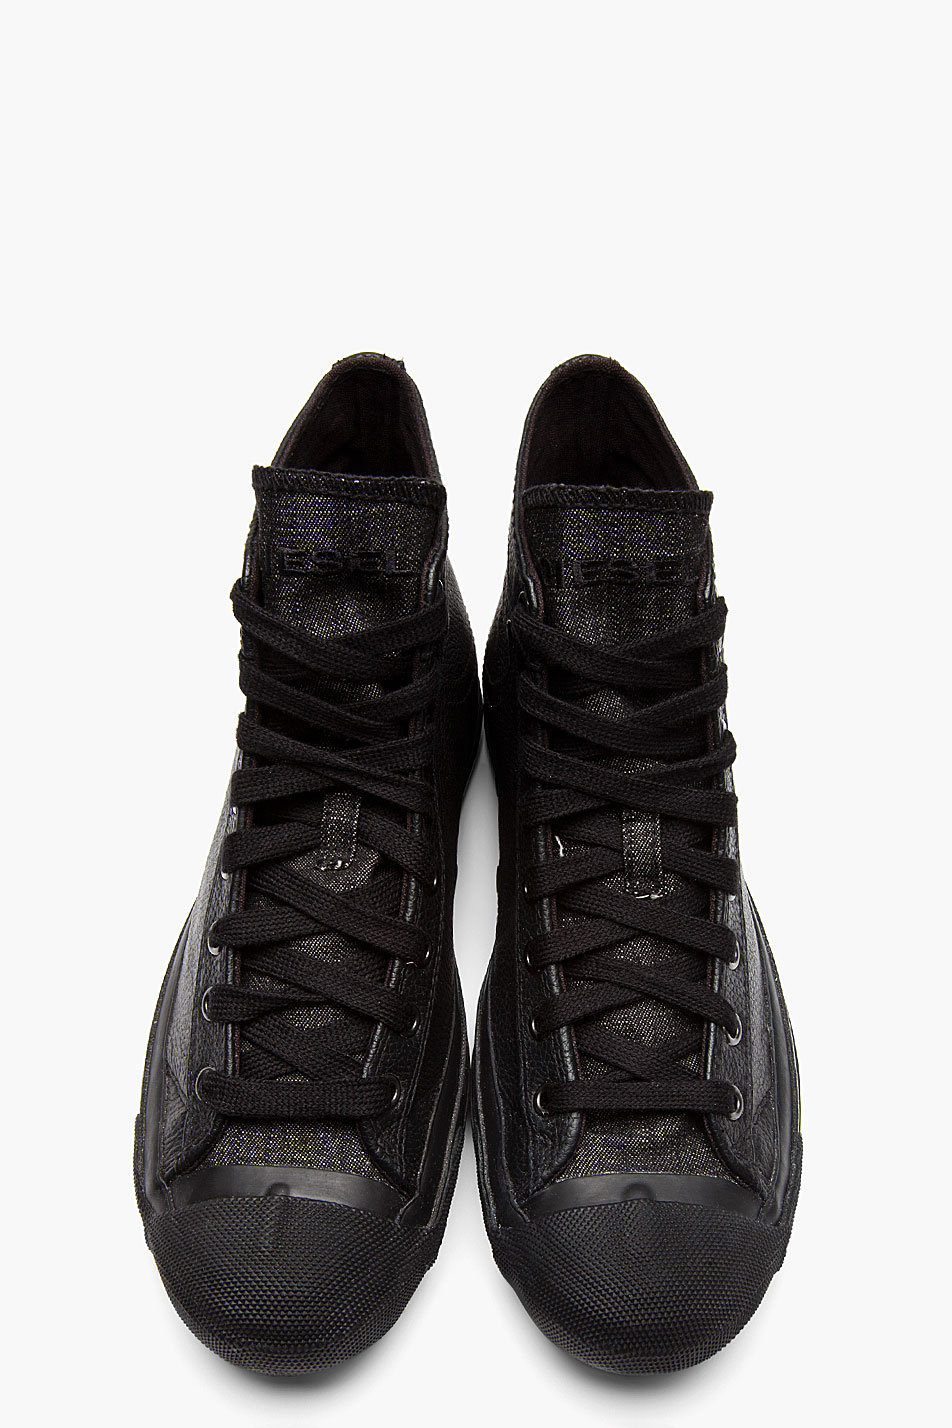 DIESEL Black Leather Exposure High-top Sneakers in Black for Men - Lyst